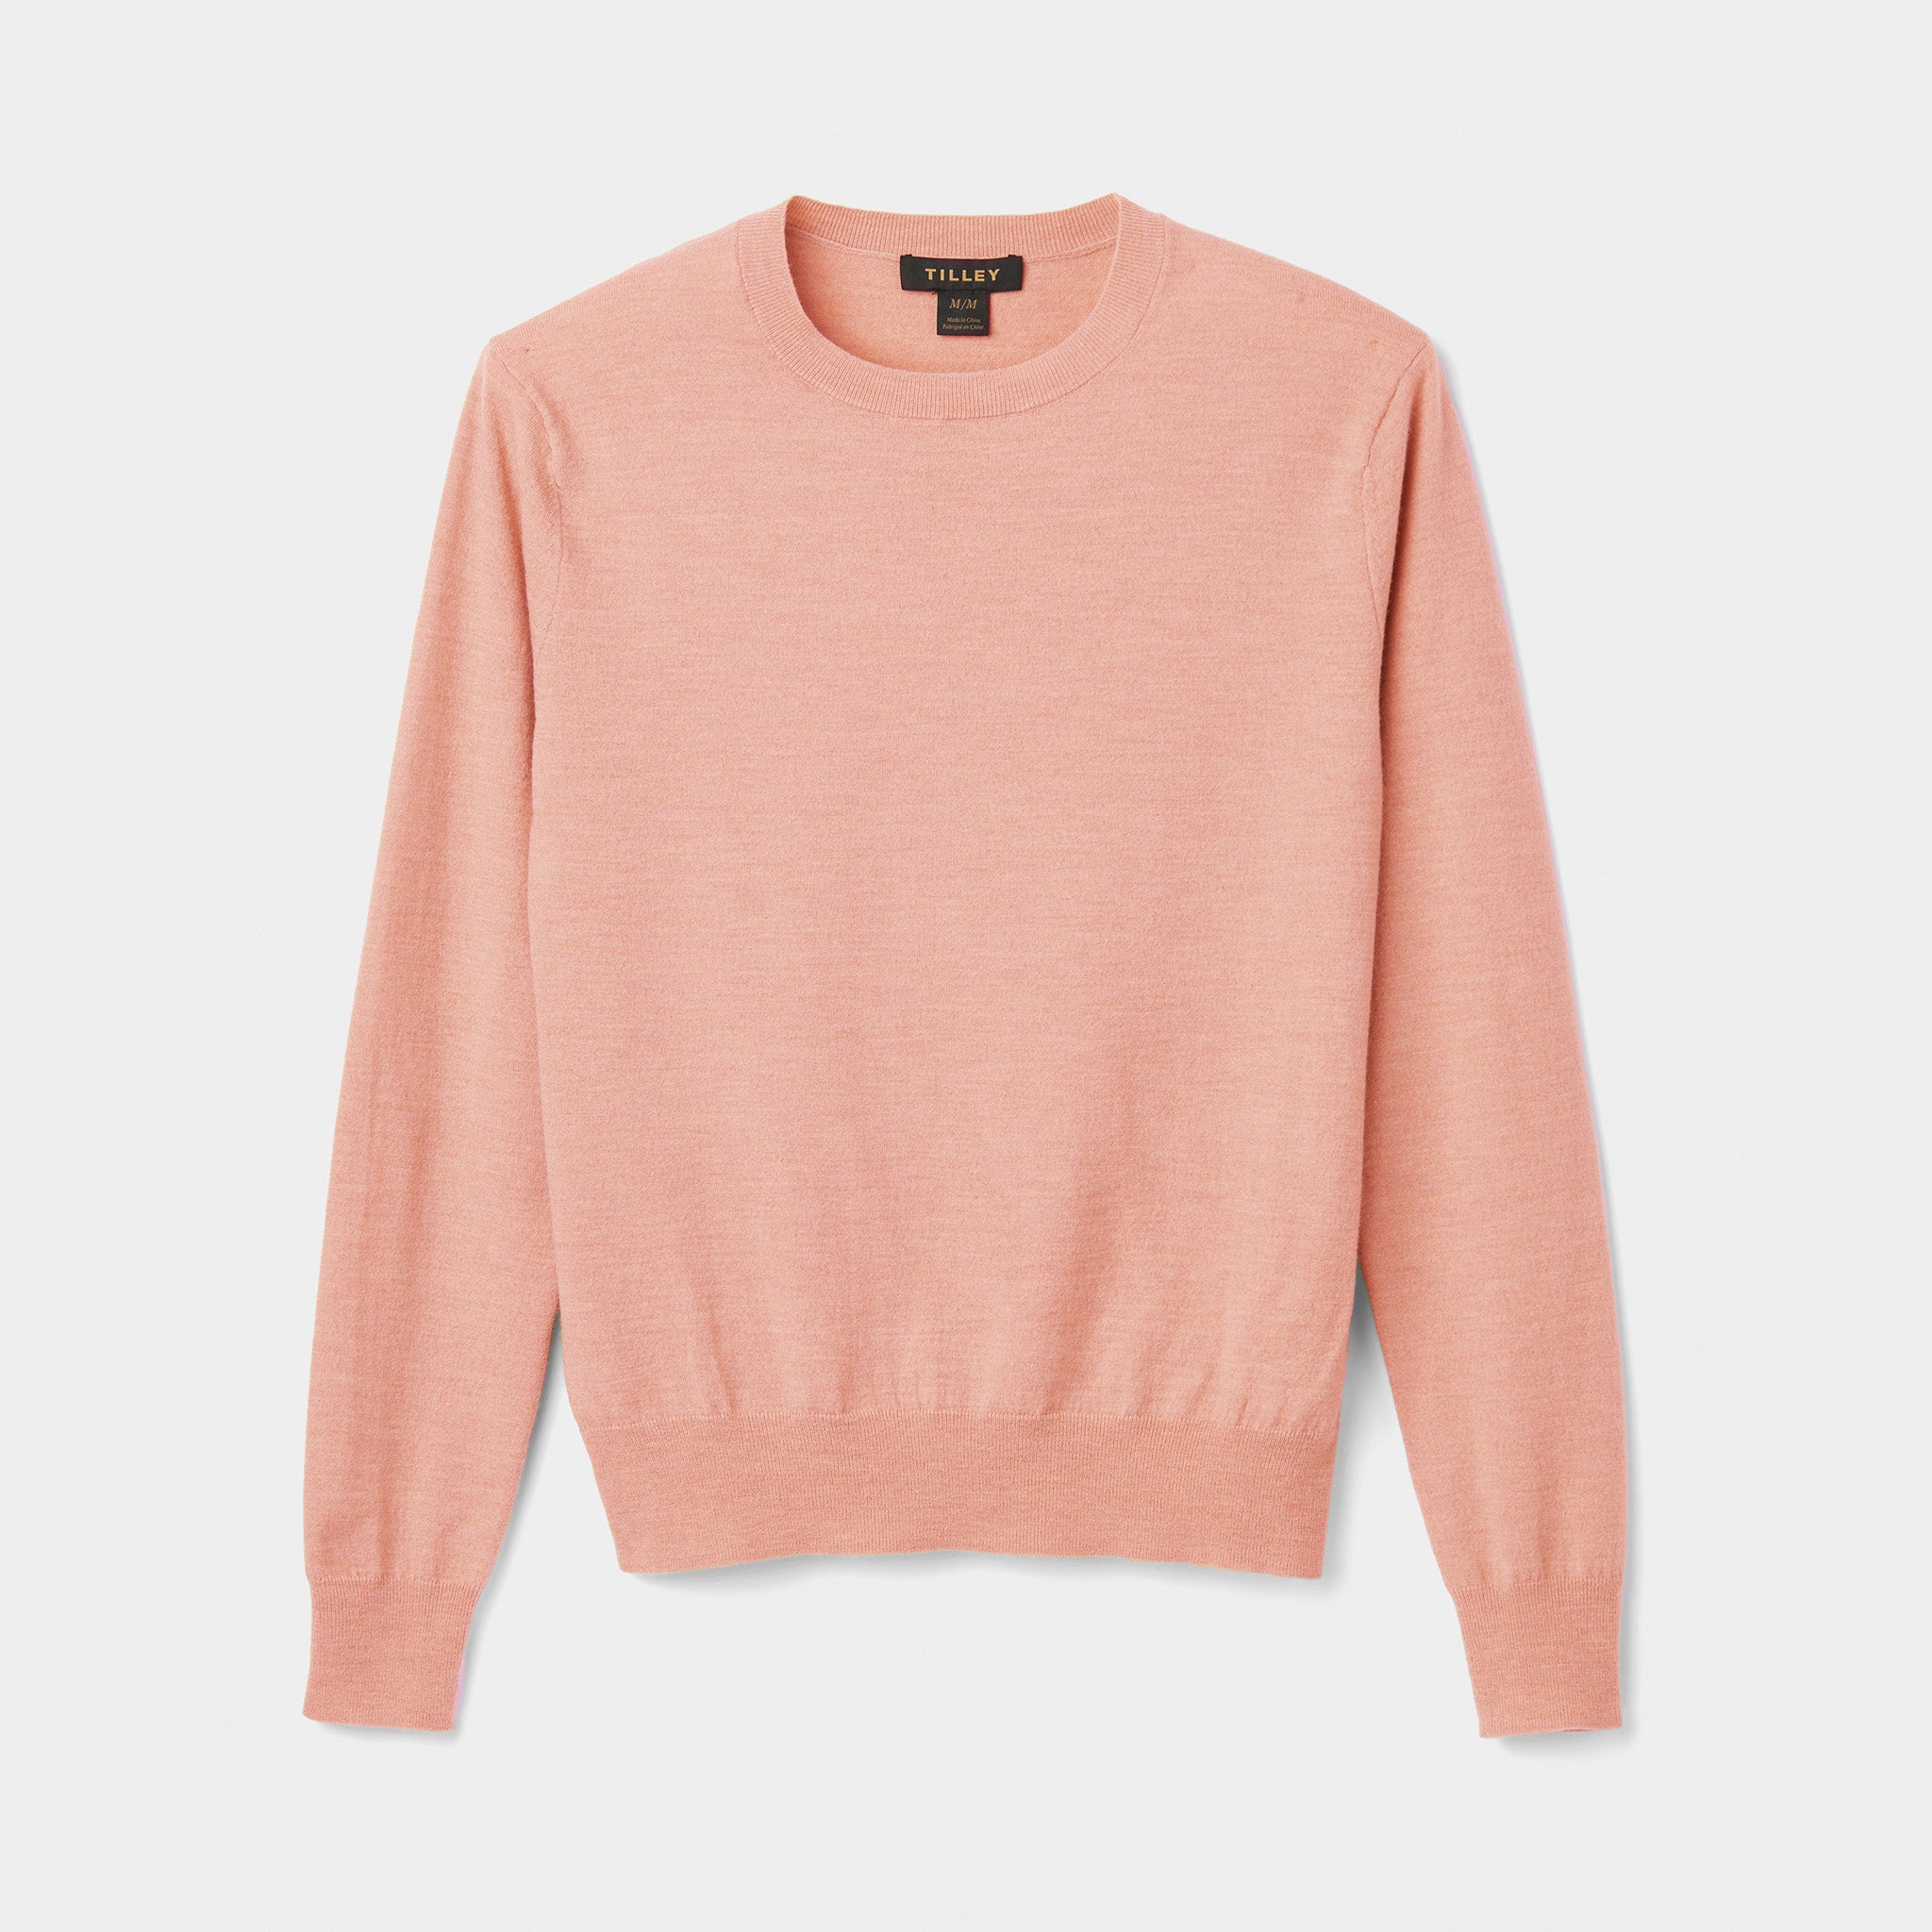 Mocha Washed V-Neck Top  Pink crewneck sweatshirt, V neck tops